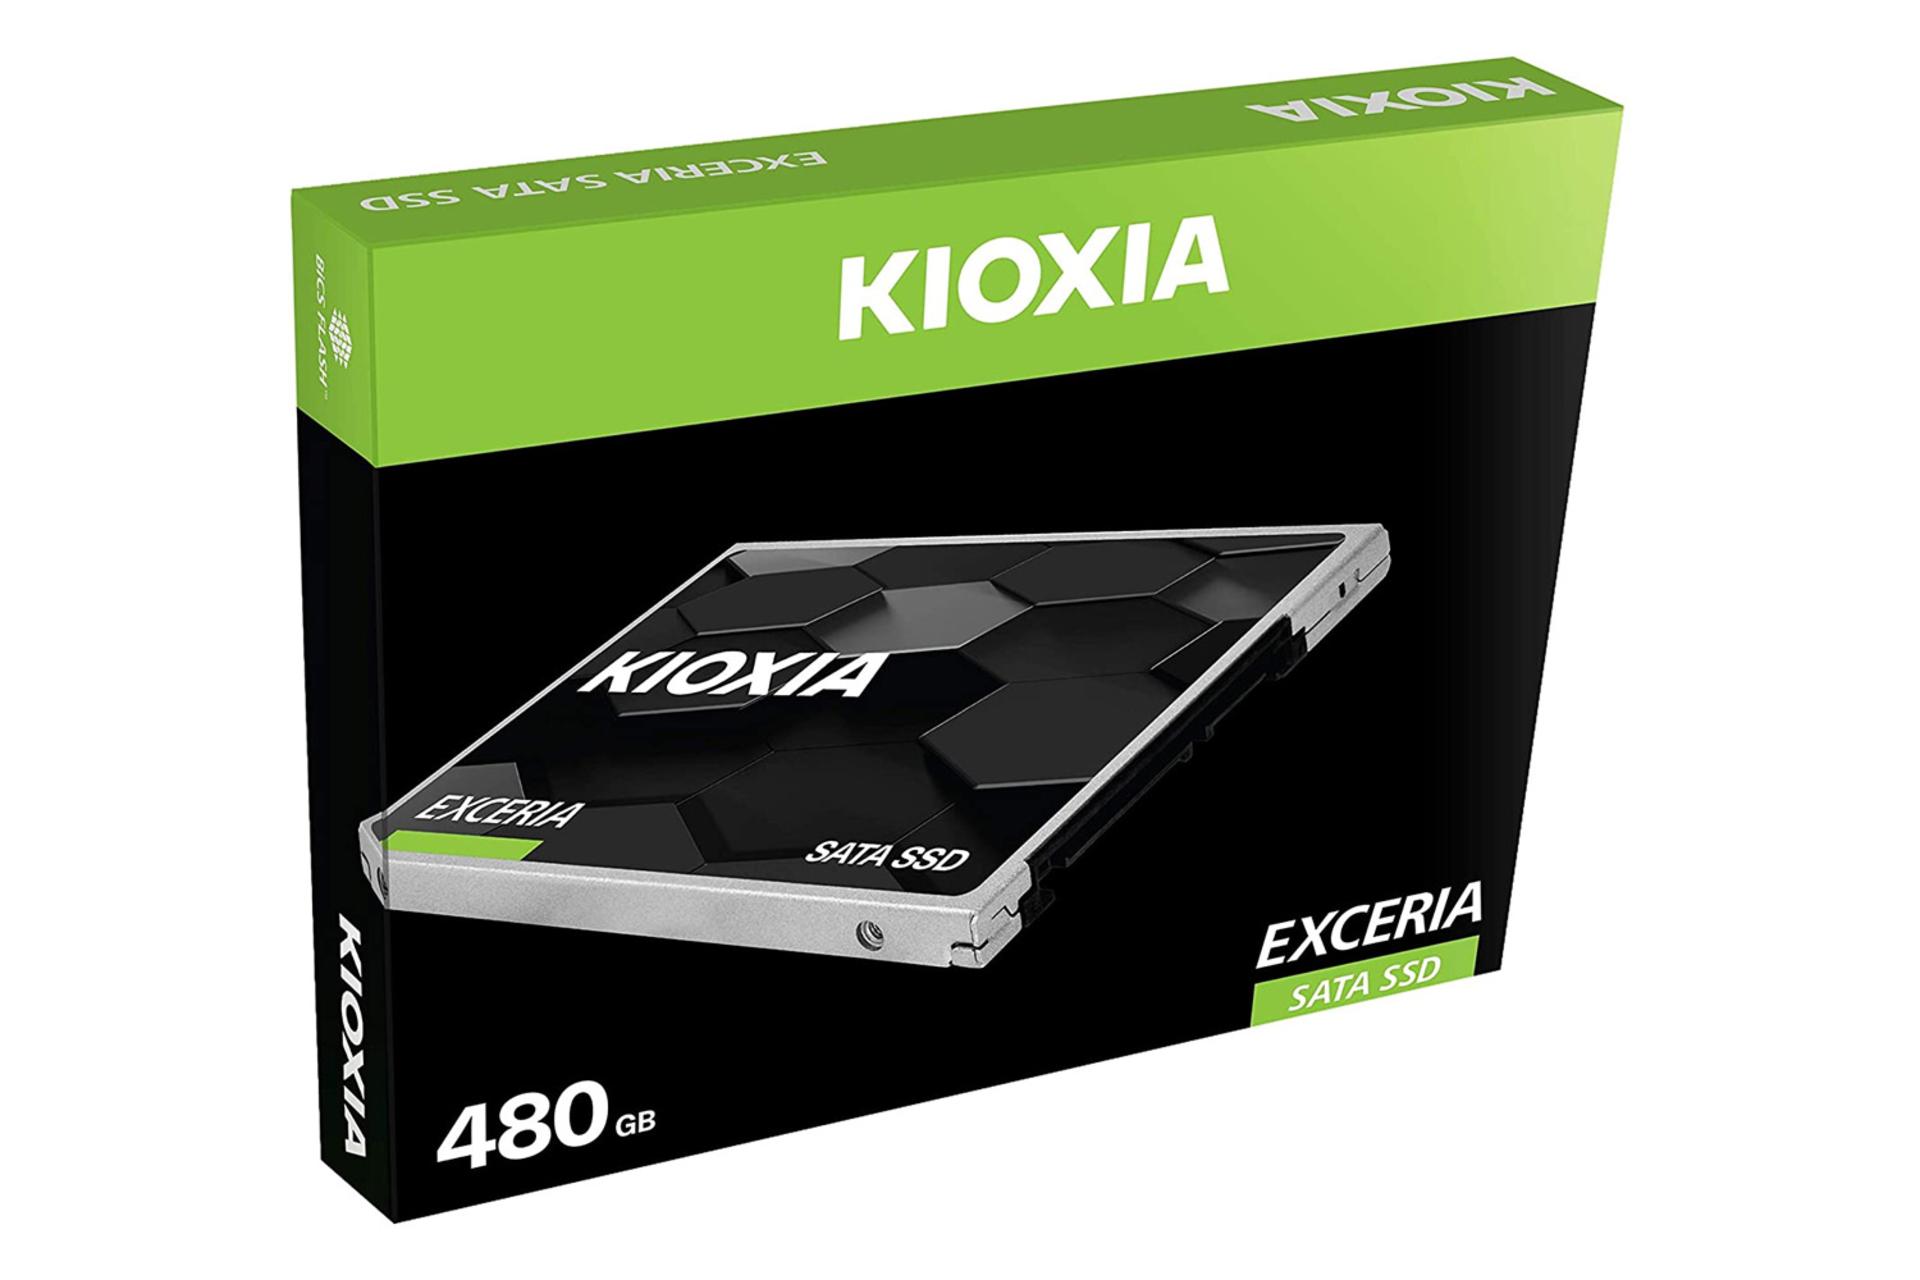 جعبه SSD کیوکسیا EXCERIA SATA 2.5 Inch ظرفیت 480 گیگابایت